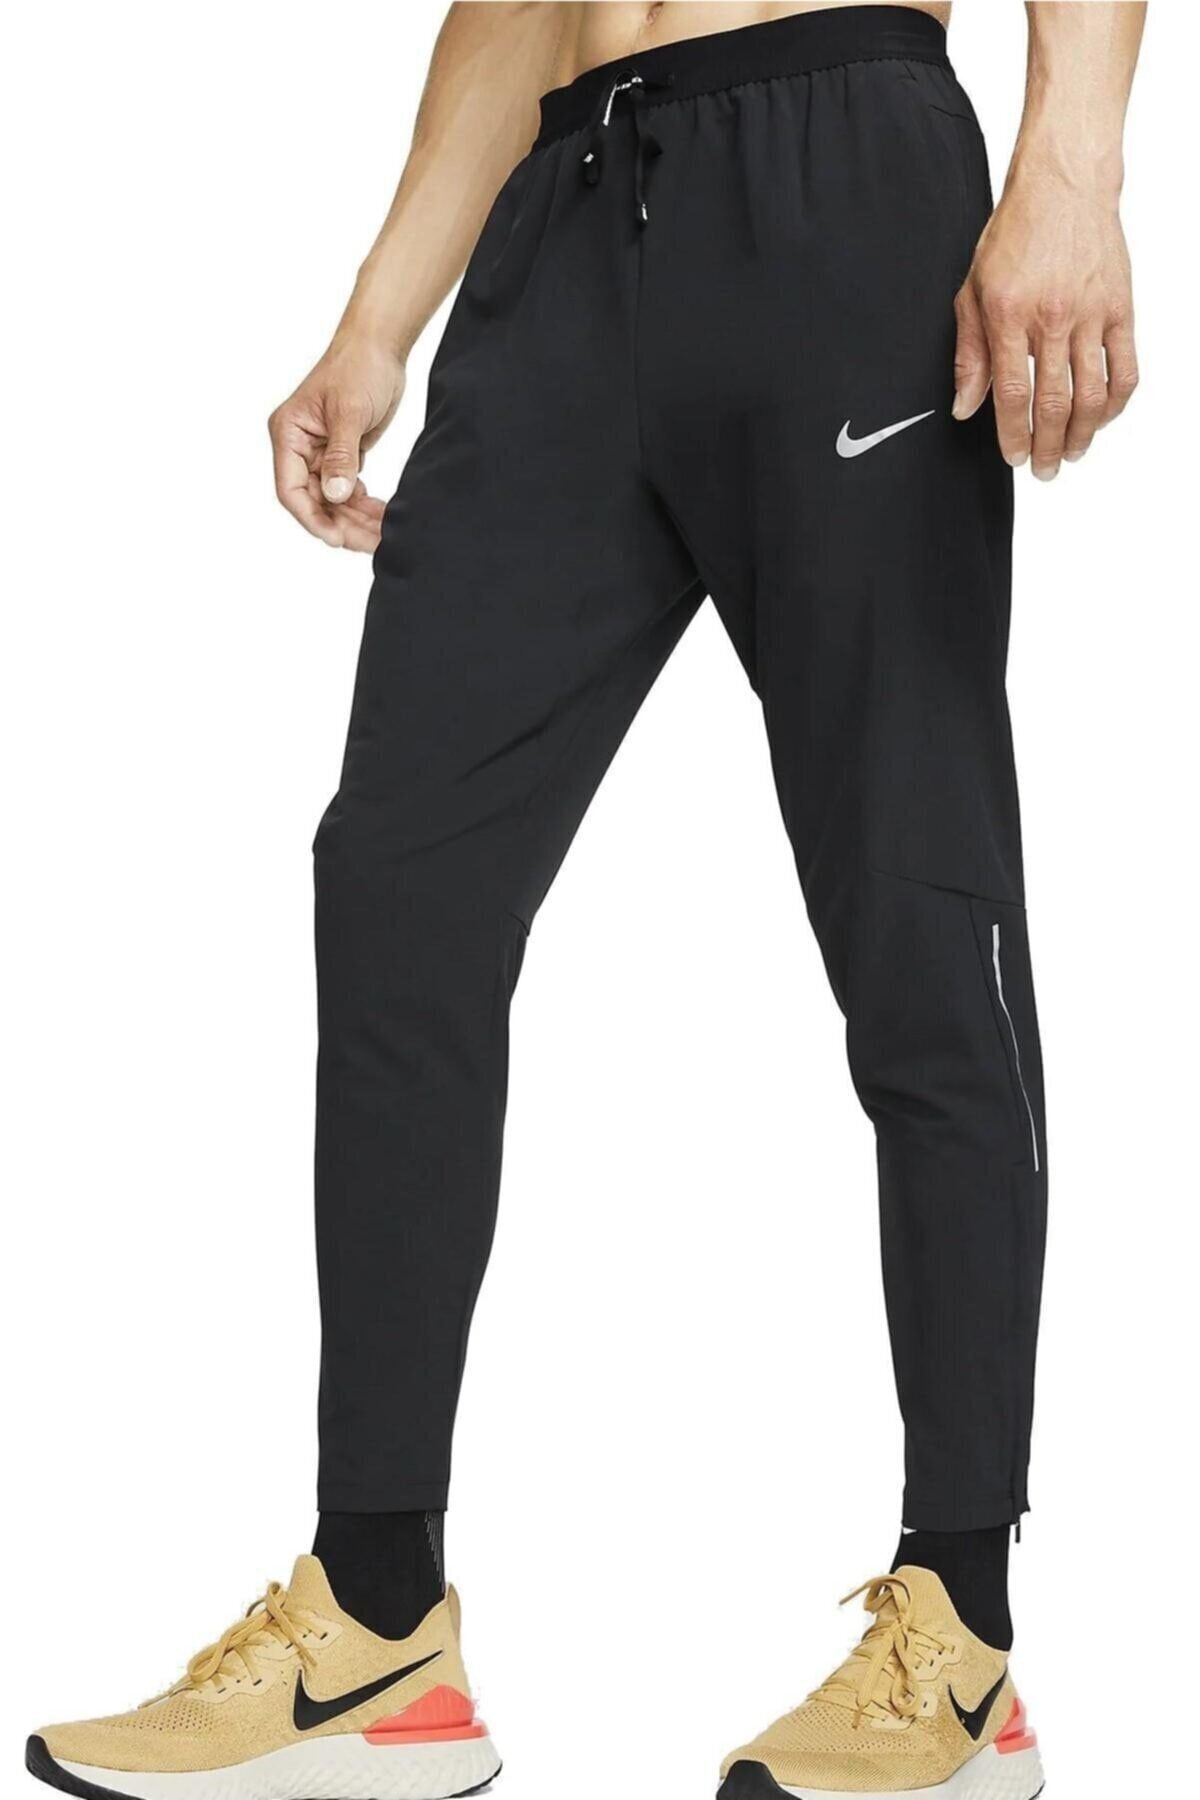 Nike Phenom Elite Men's Knit Running Pants Size 3XL Black CU5504-010 | Running  pants, Men's knit, Pants